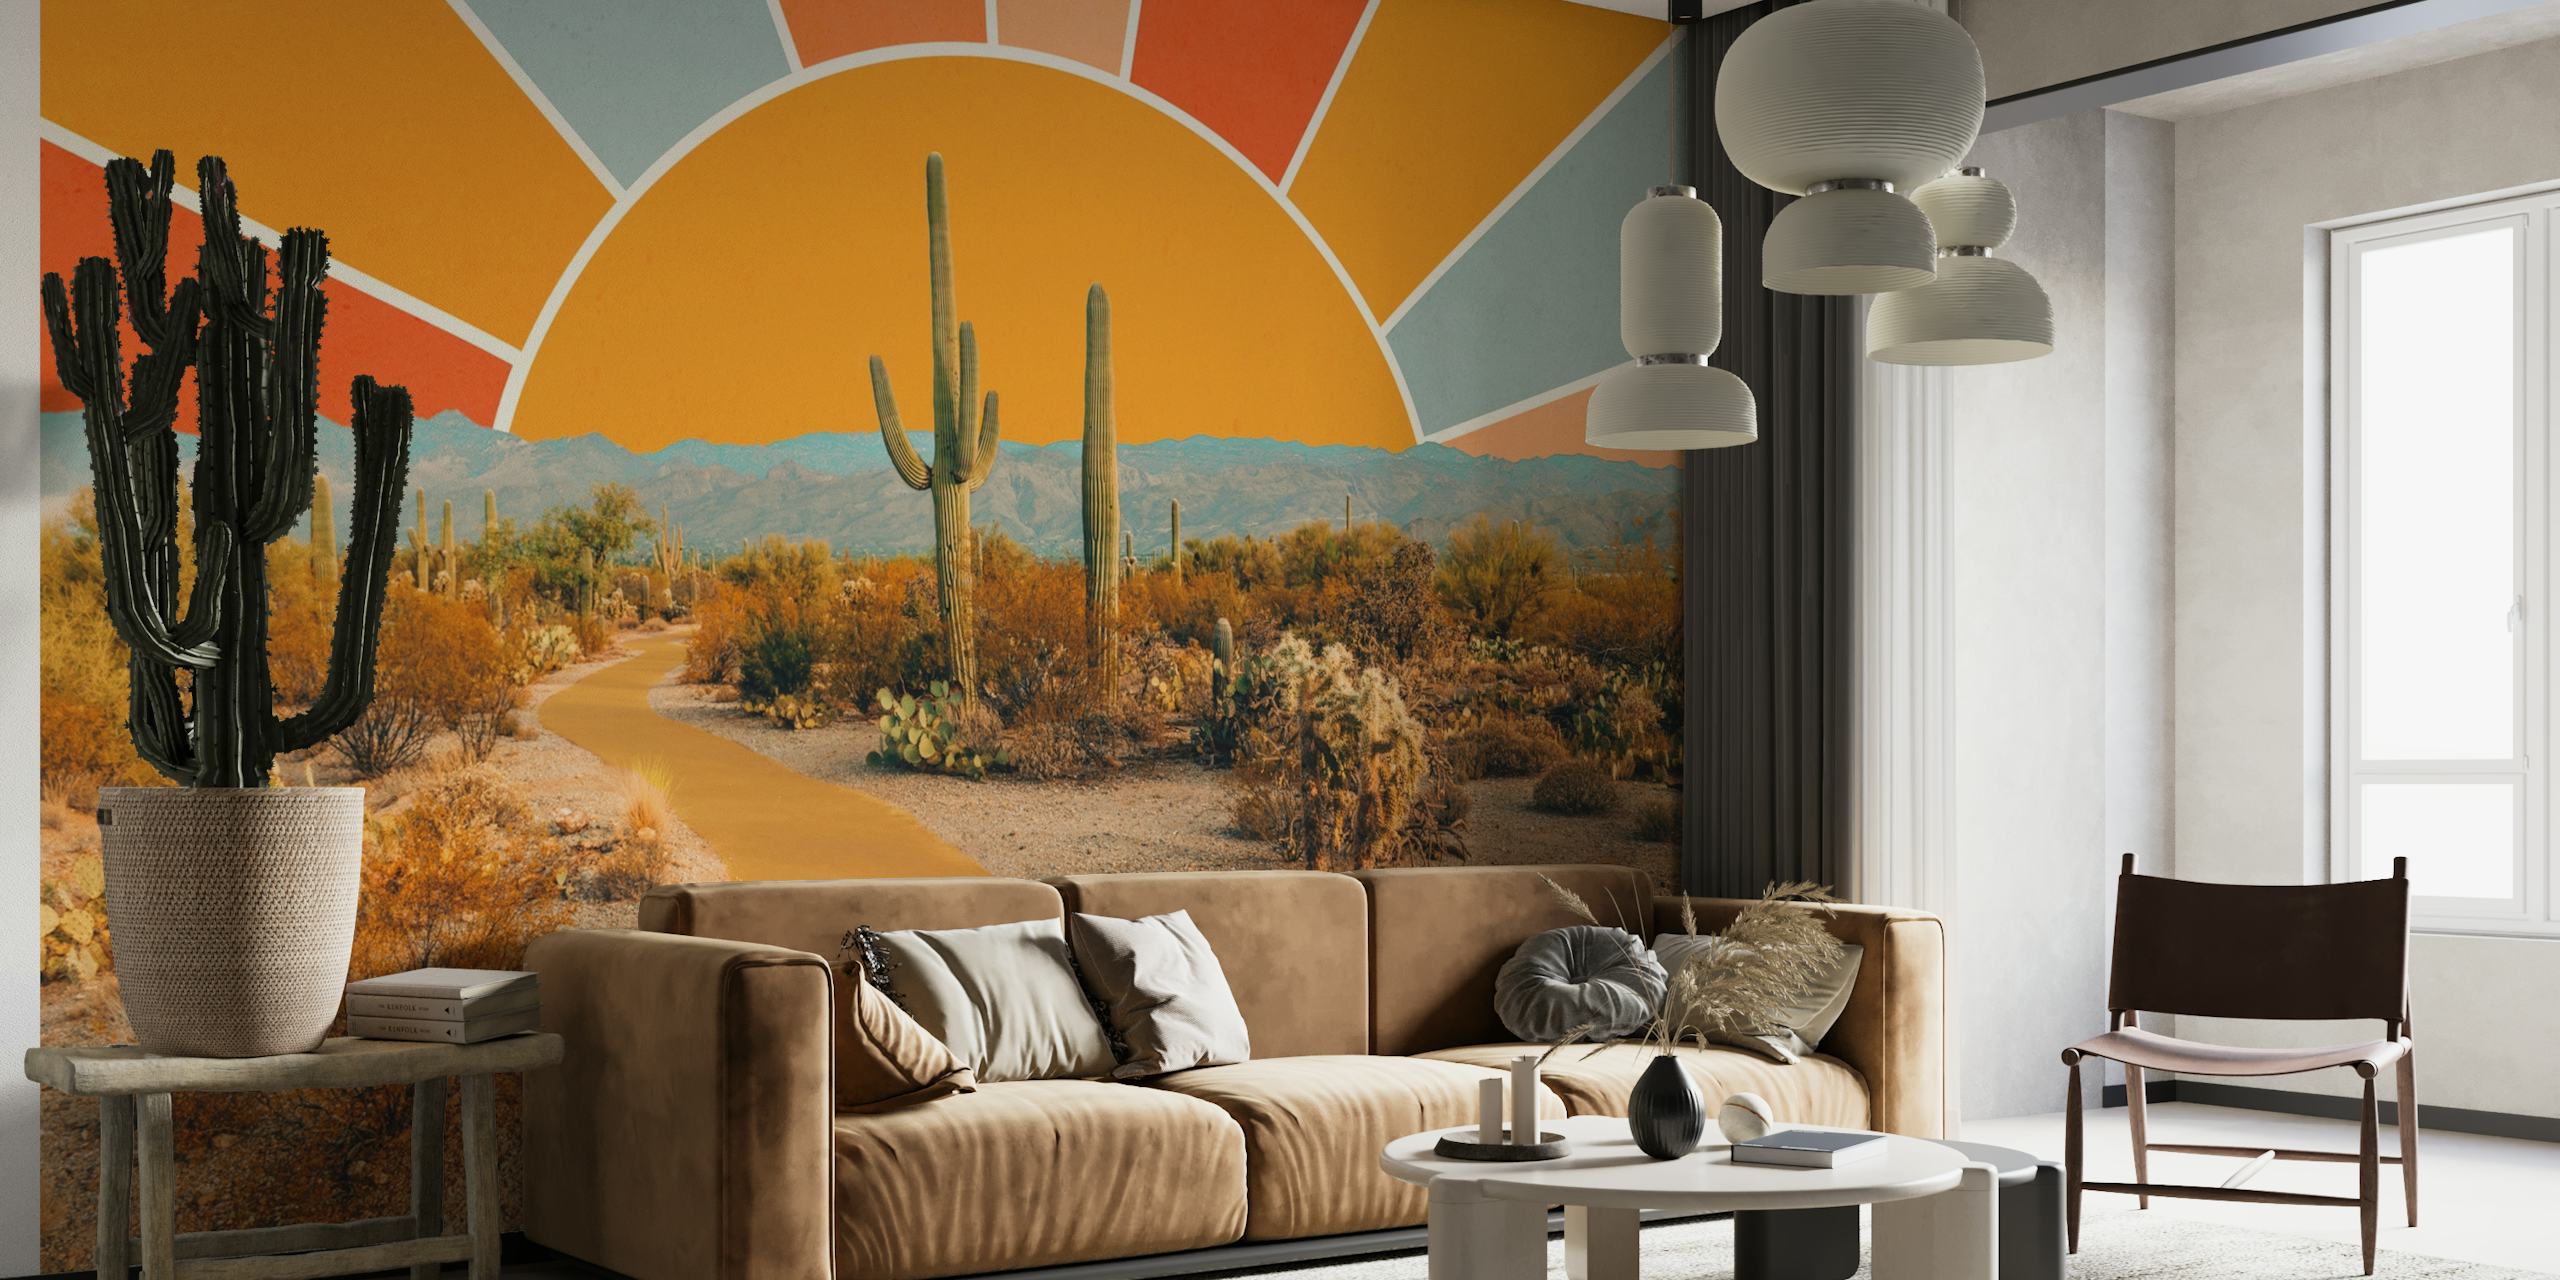 Fotomural vinílico artístico de cena do deserto com cactos e design de sol quente